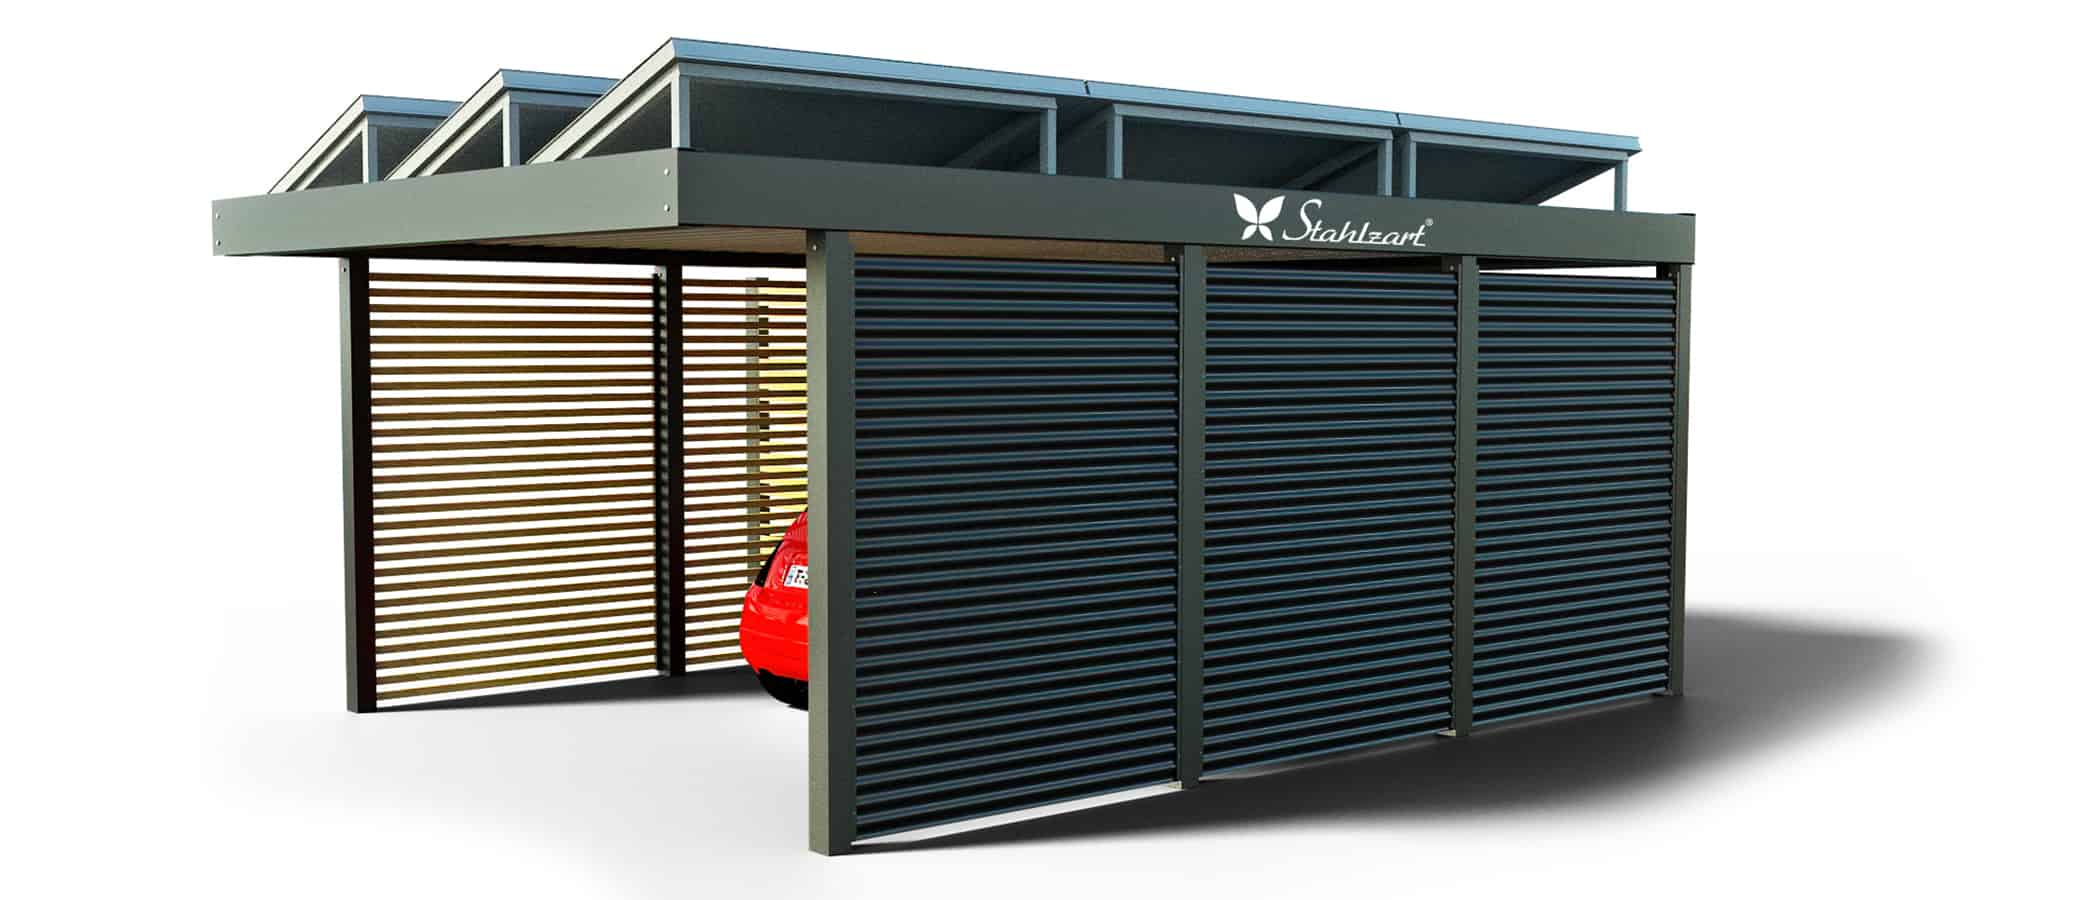 solar-carport-mit-flachdach-carports-pv-anlage-solaranlage-photovoltaik-garagen-garagendach-solarcarport-installation-solarmodulen-solarcarports-flaechen-e-auto-fiat-holz-metall-stahl-stahlzart